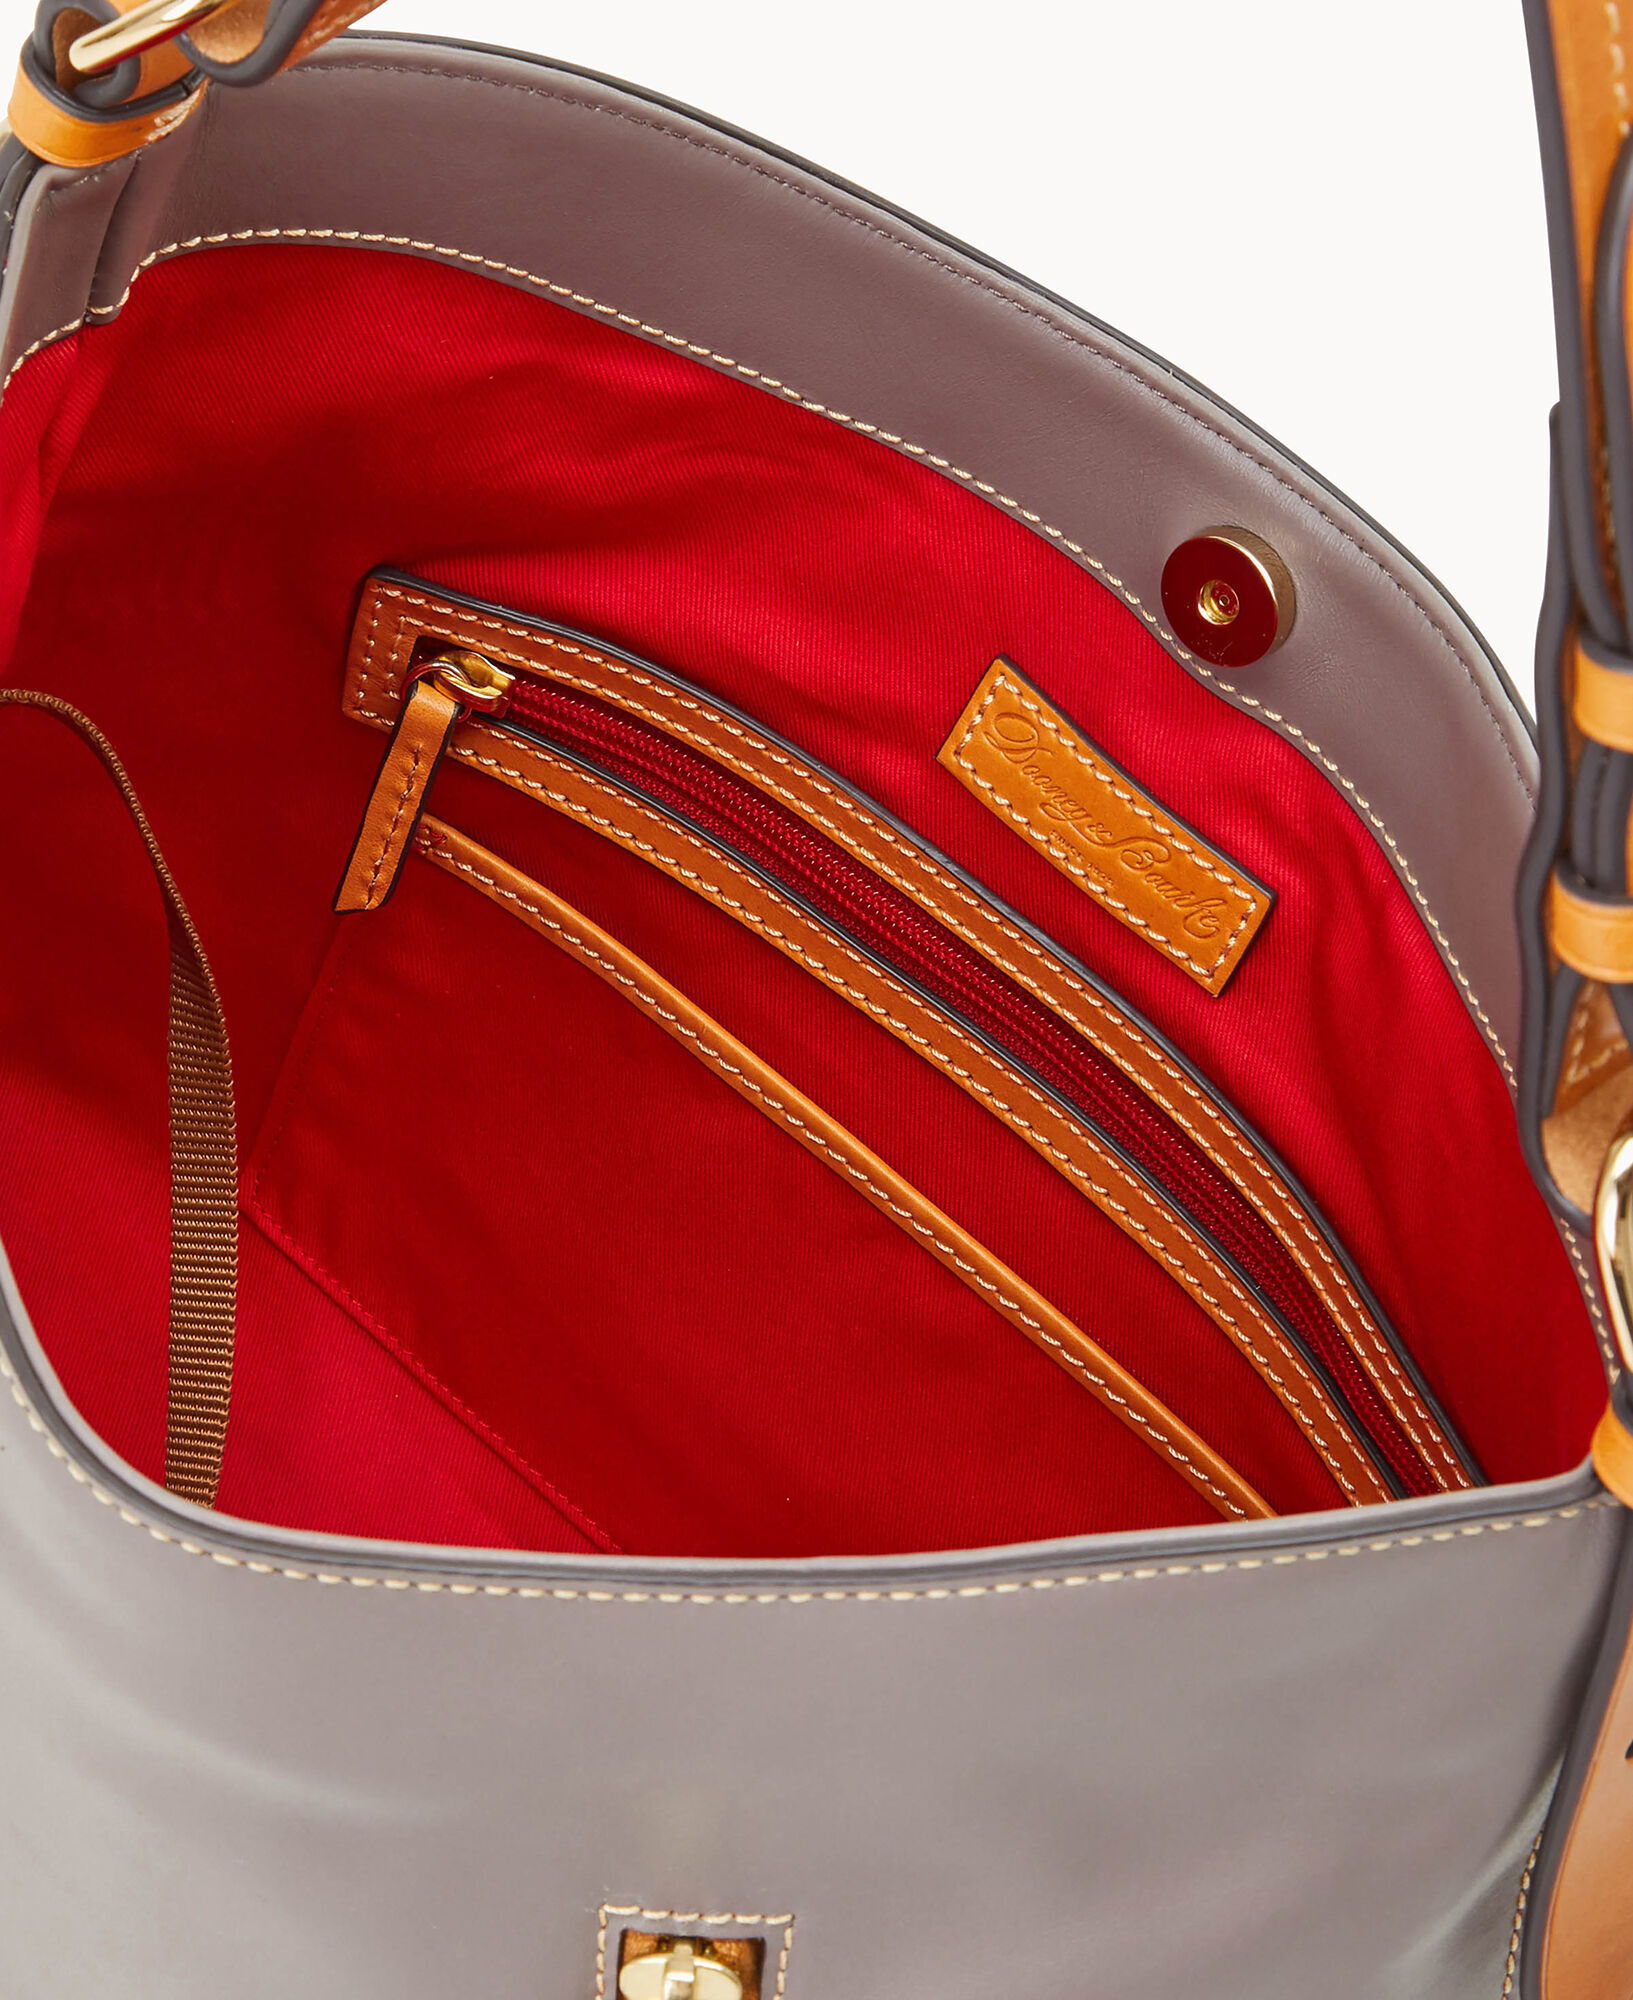 Dooney & Bourke Handbag, Wexford Leather Hobo Shoulder Bag